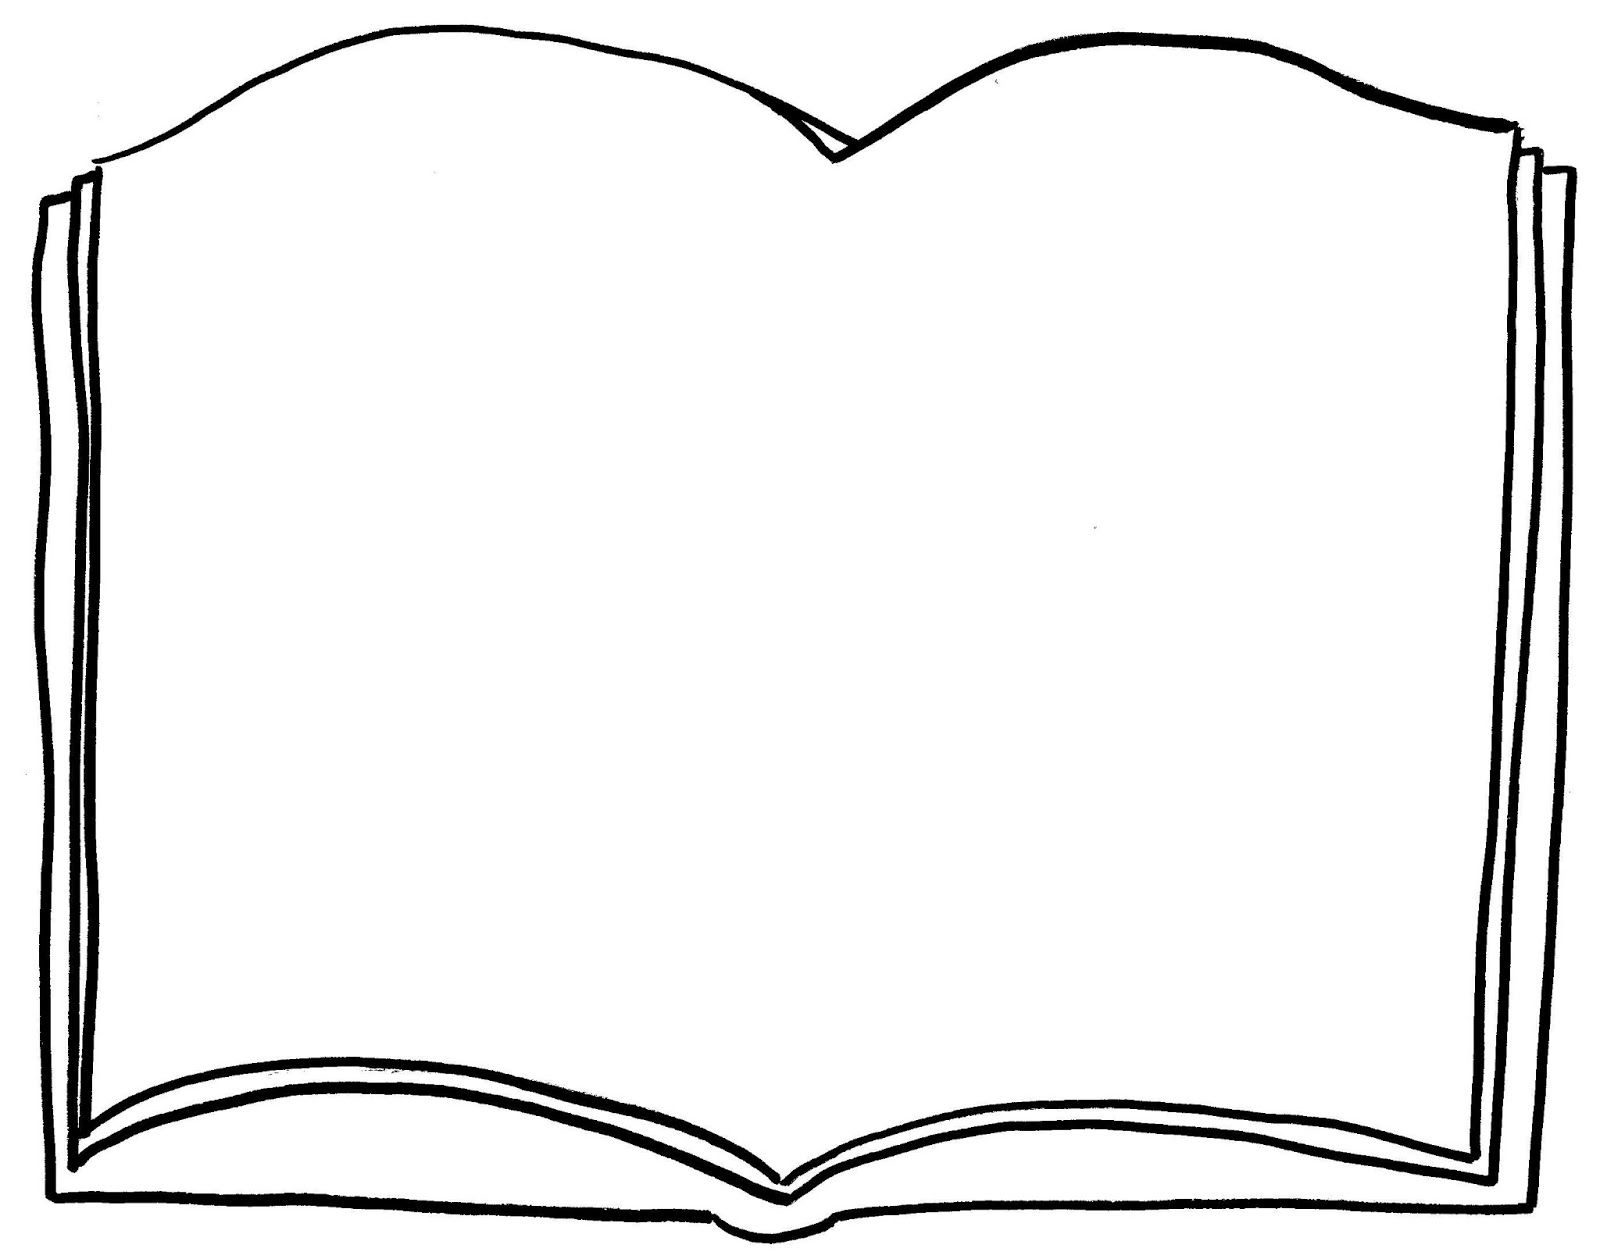 Flat open book clip art